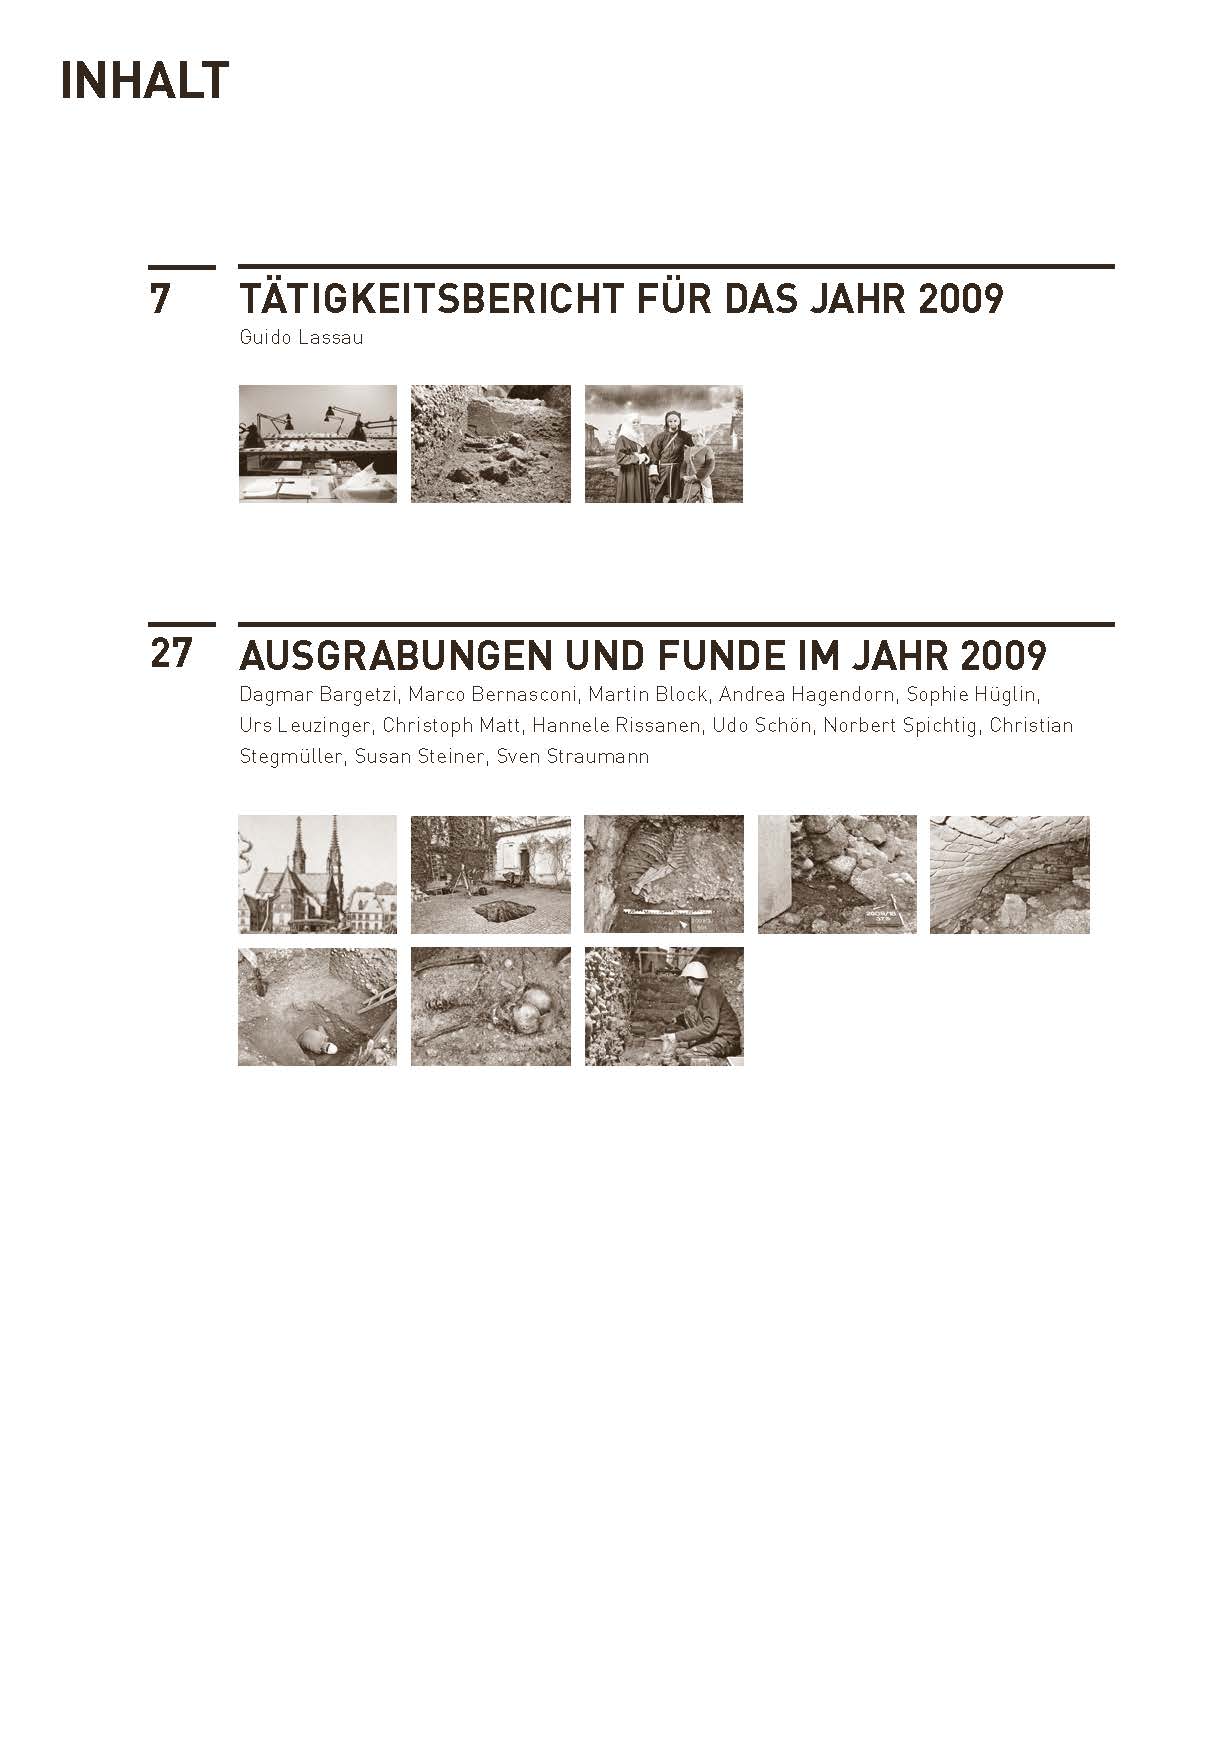 Inhaltsverzeichnis des Jahresberichts 2009